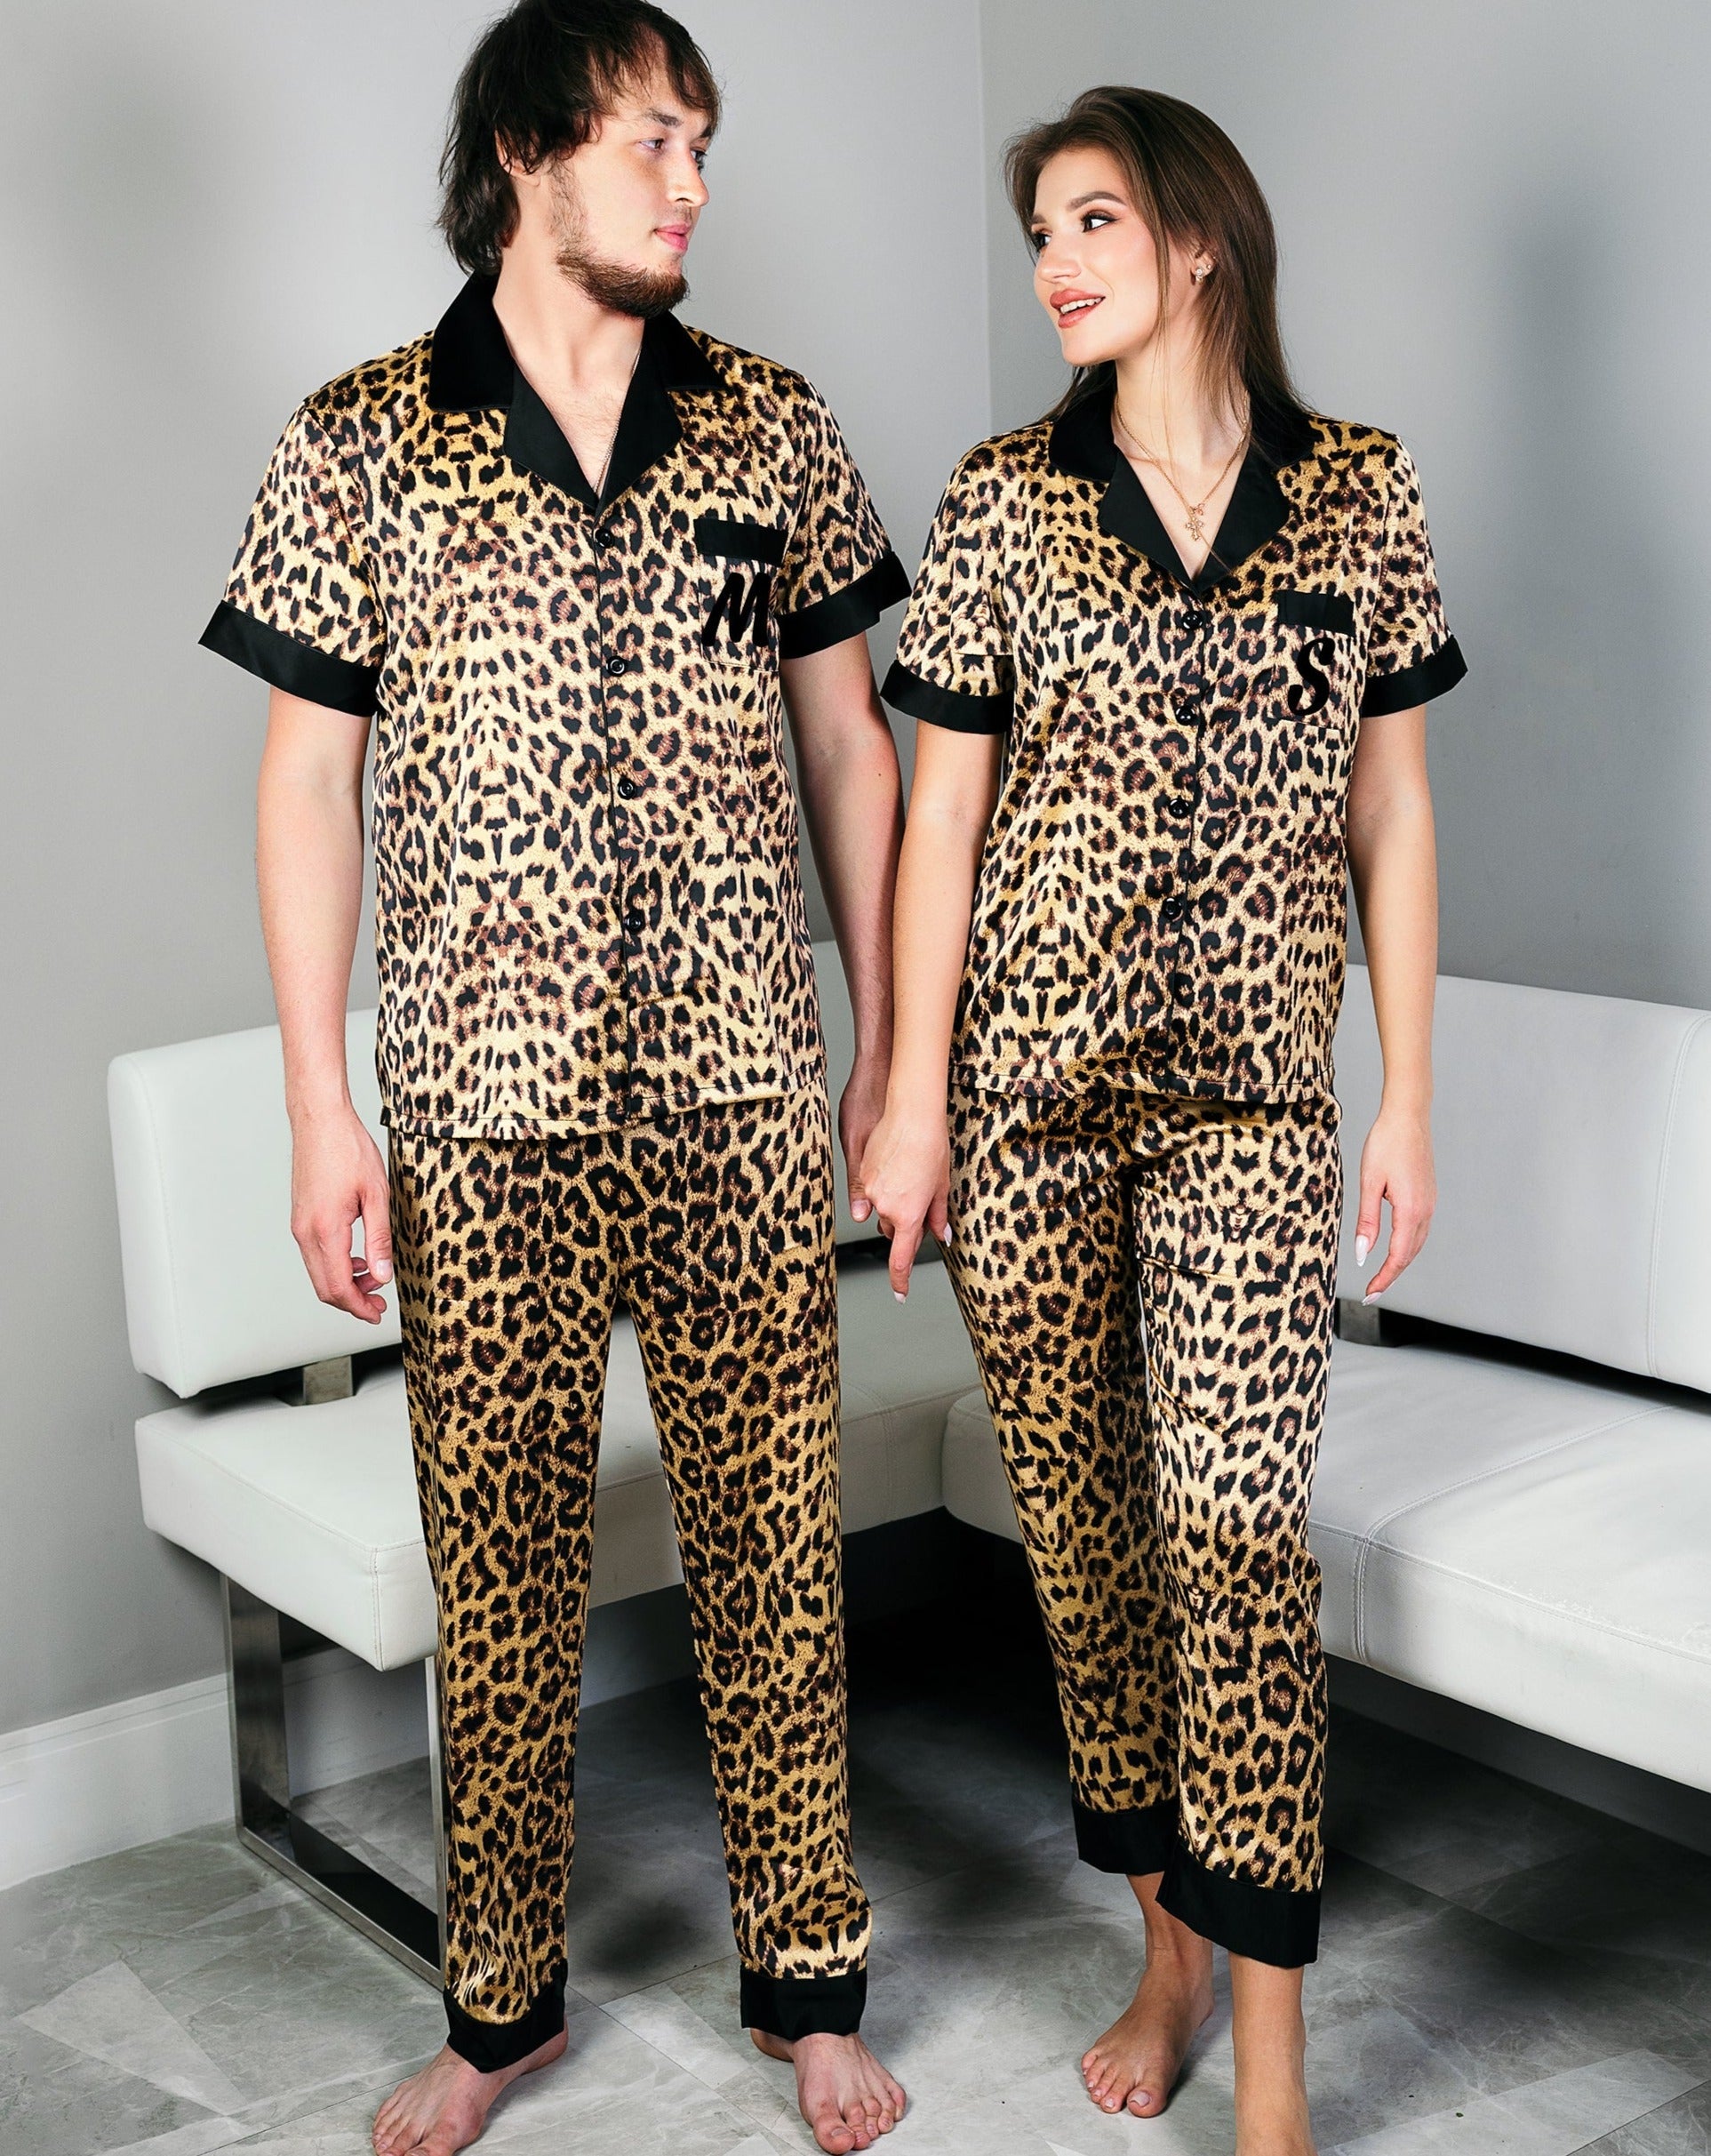 Sunny Honeymoon gift Wedding Gifts Pjs, Satin Pajamas Gift, Boutique Custom for Miami – Pajamas Set Leopard Pajamas Anniversary Xmas Couple,